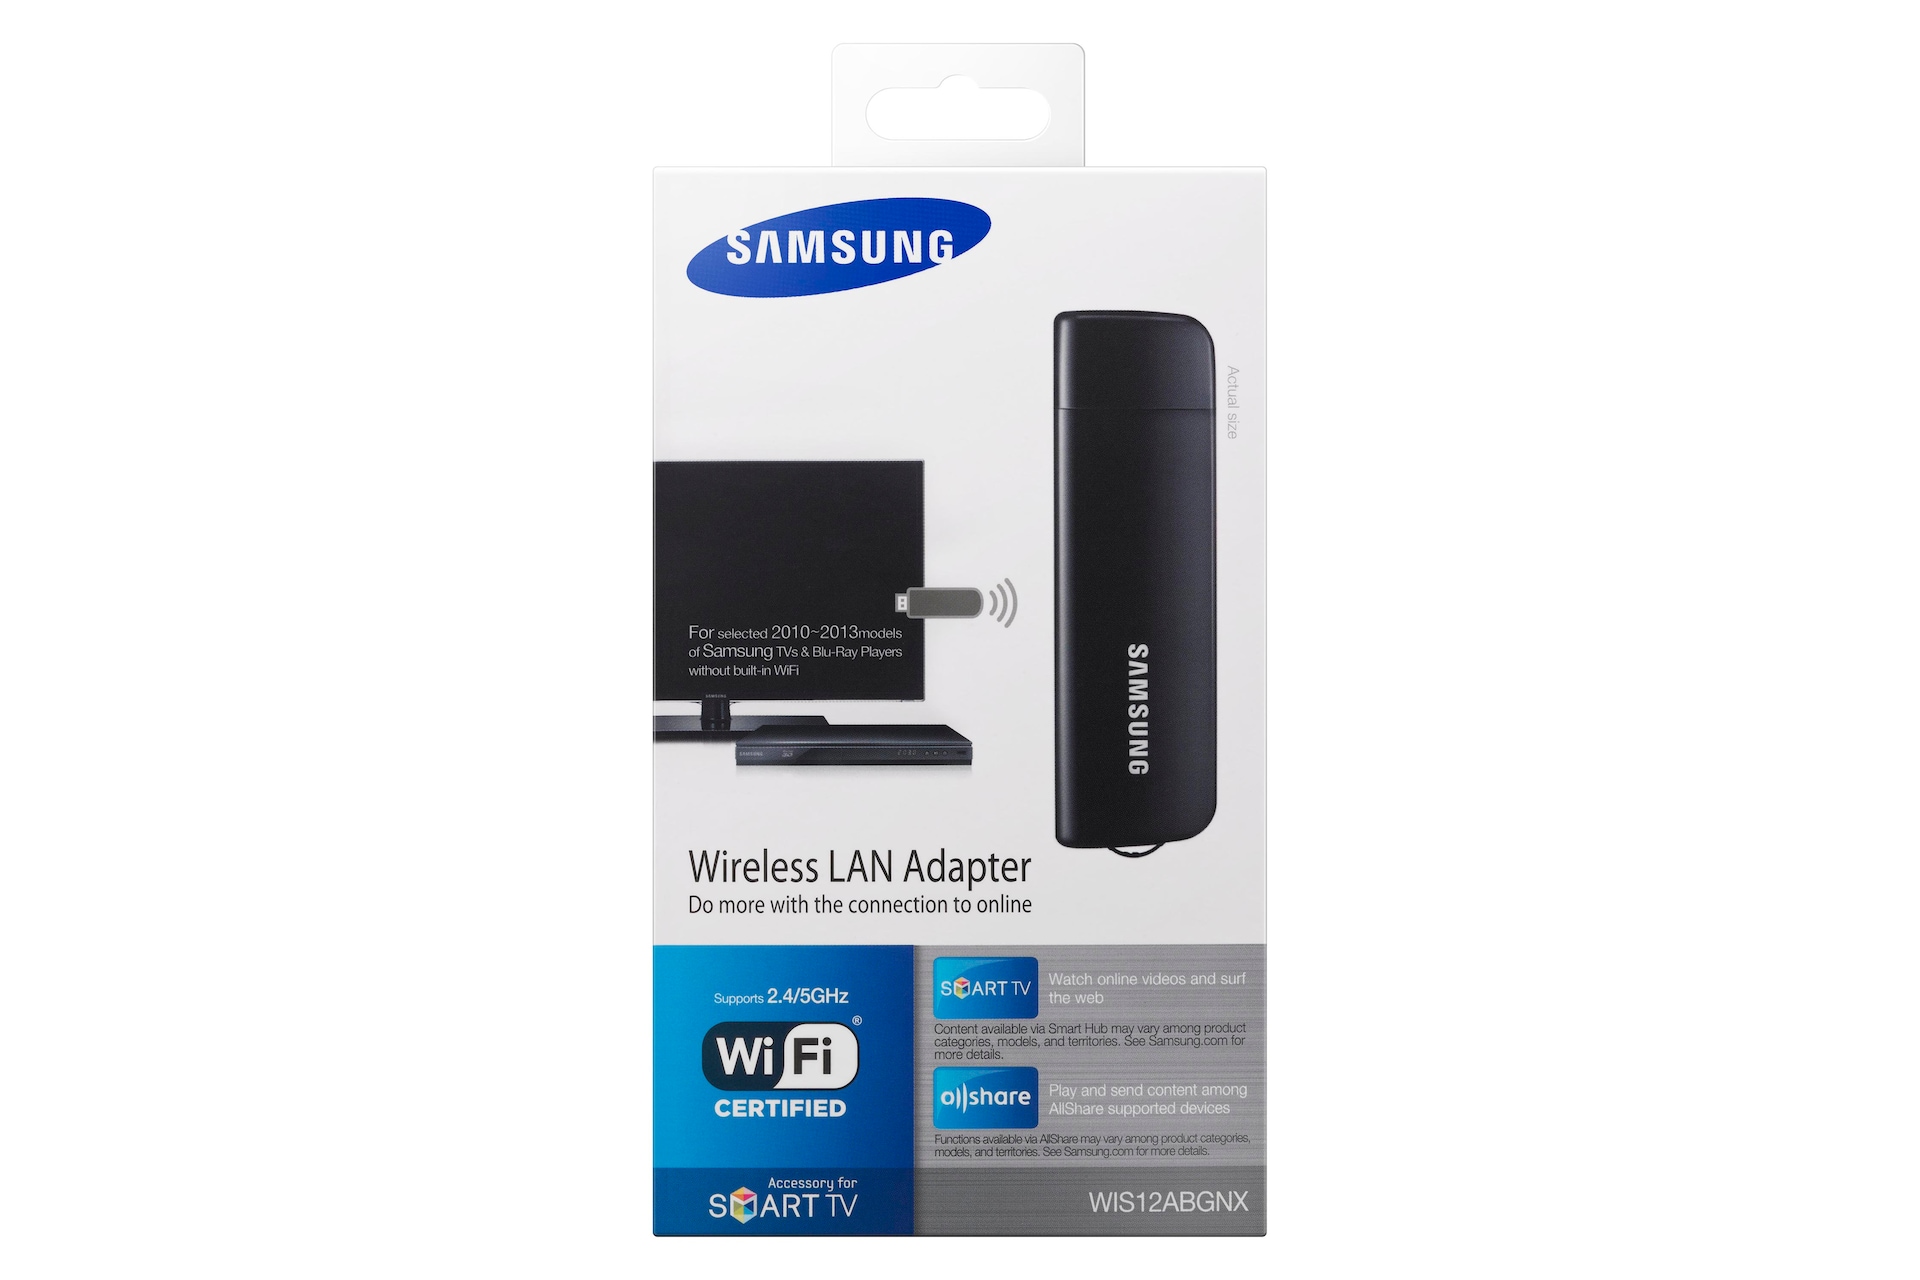 Tv samsung wi fi. Адаптер самсунг Wireless lan. Адаптер Samsung Wireless lan Adapter для телевизора. Адаптер беспроводной самсунг 510. Адаптер беспроводной лс Samsung.